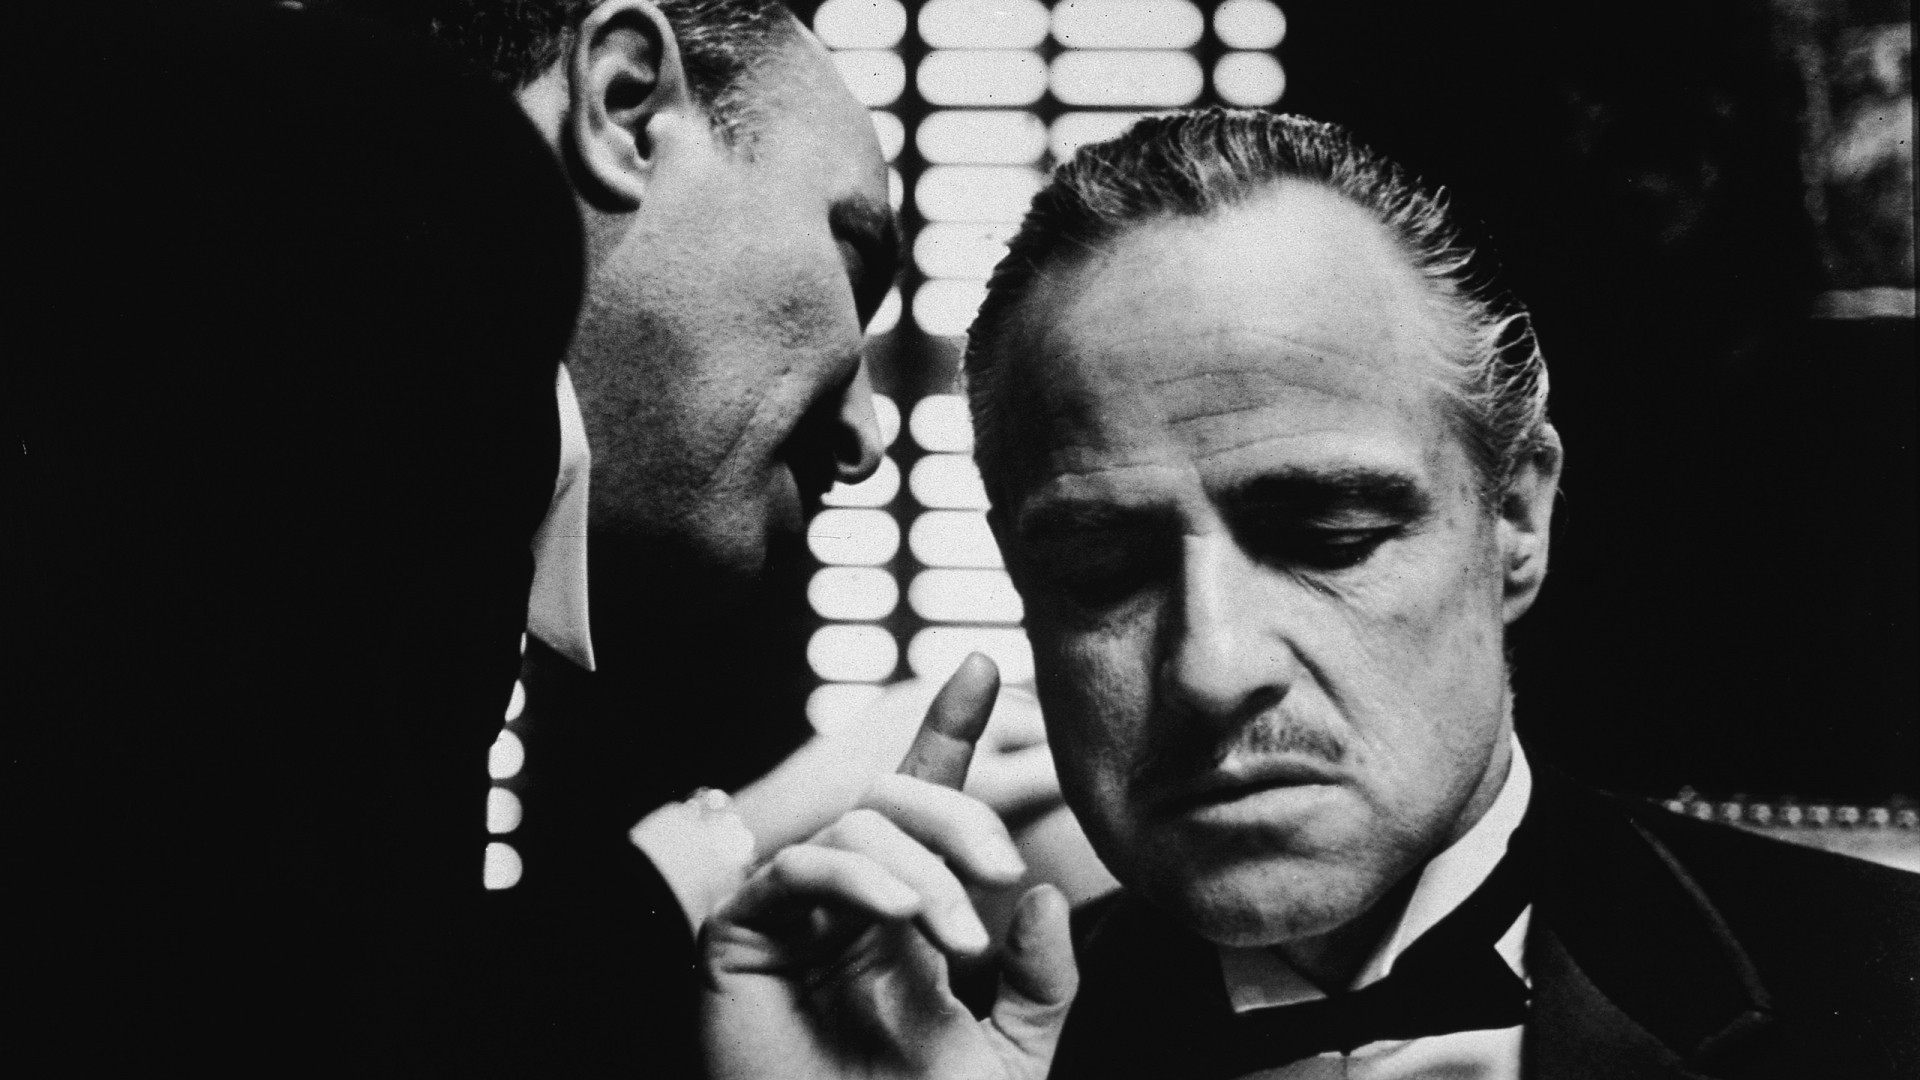 кино, Крестный отец, монохромный, Вито Корлеоне, Марлон Брандо, кадры кино - обои на рабочий стол